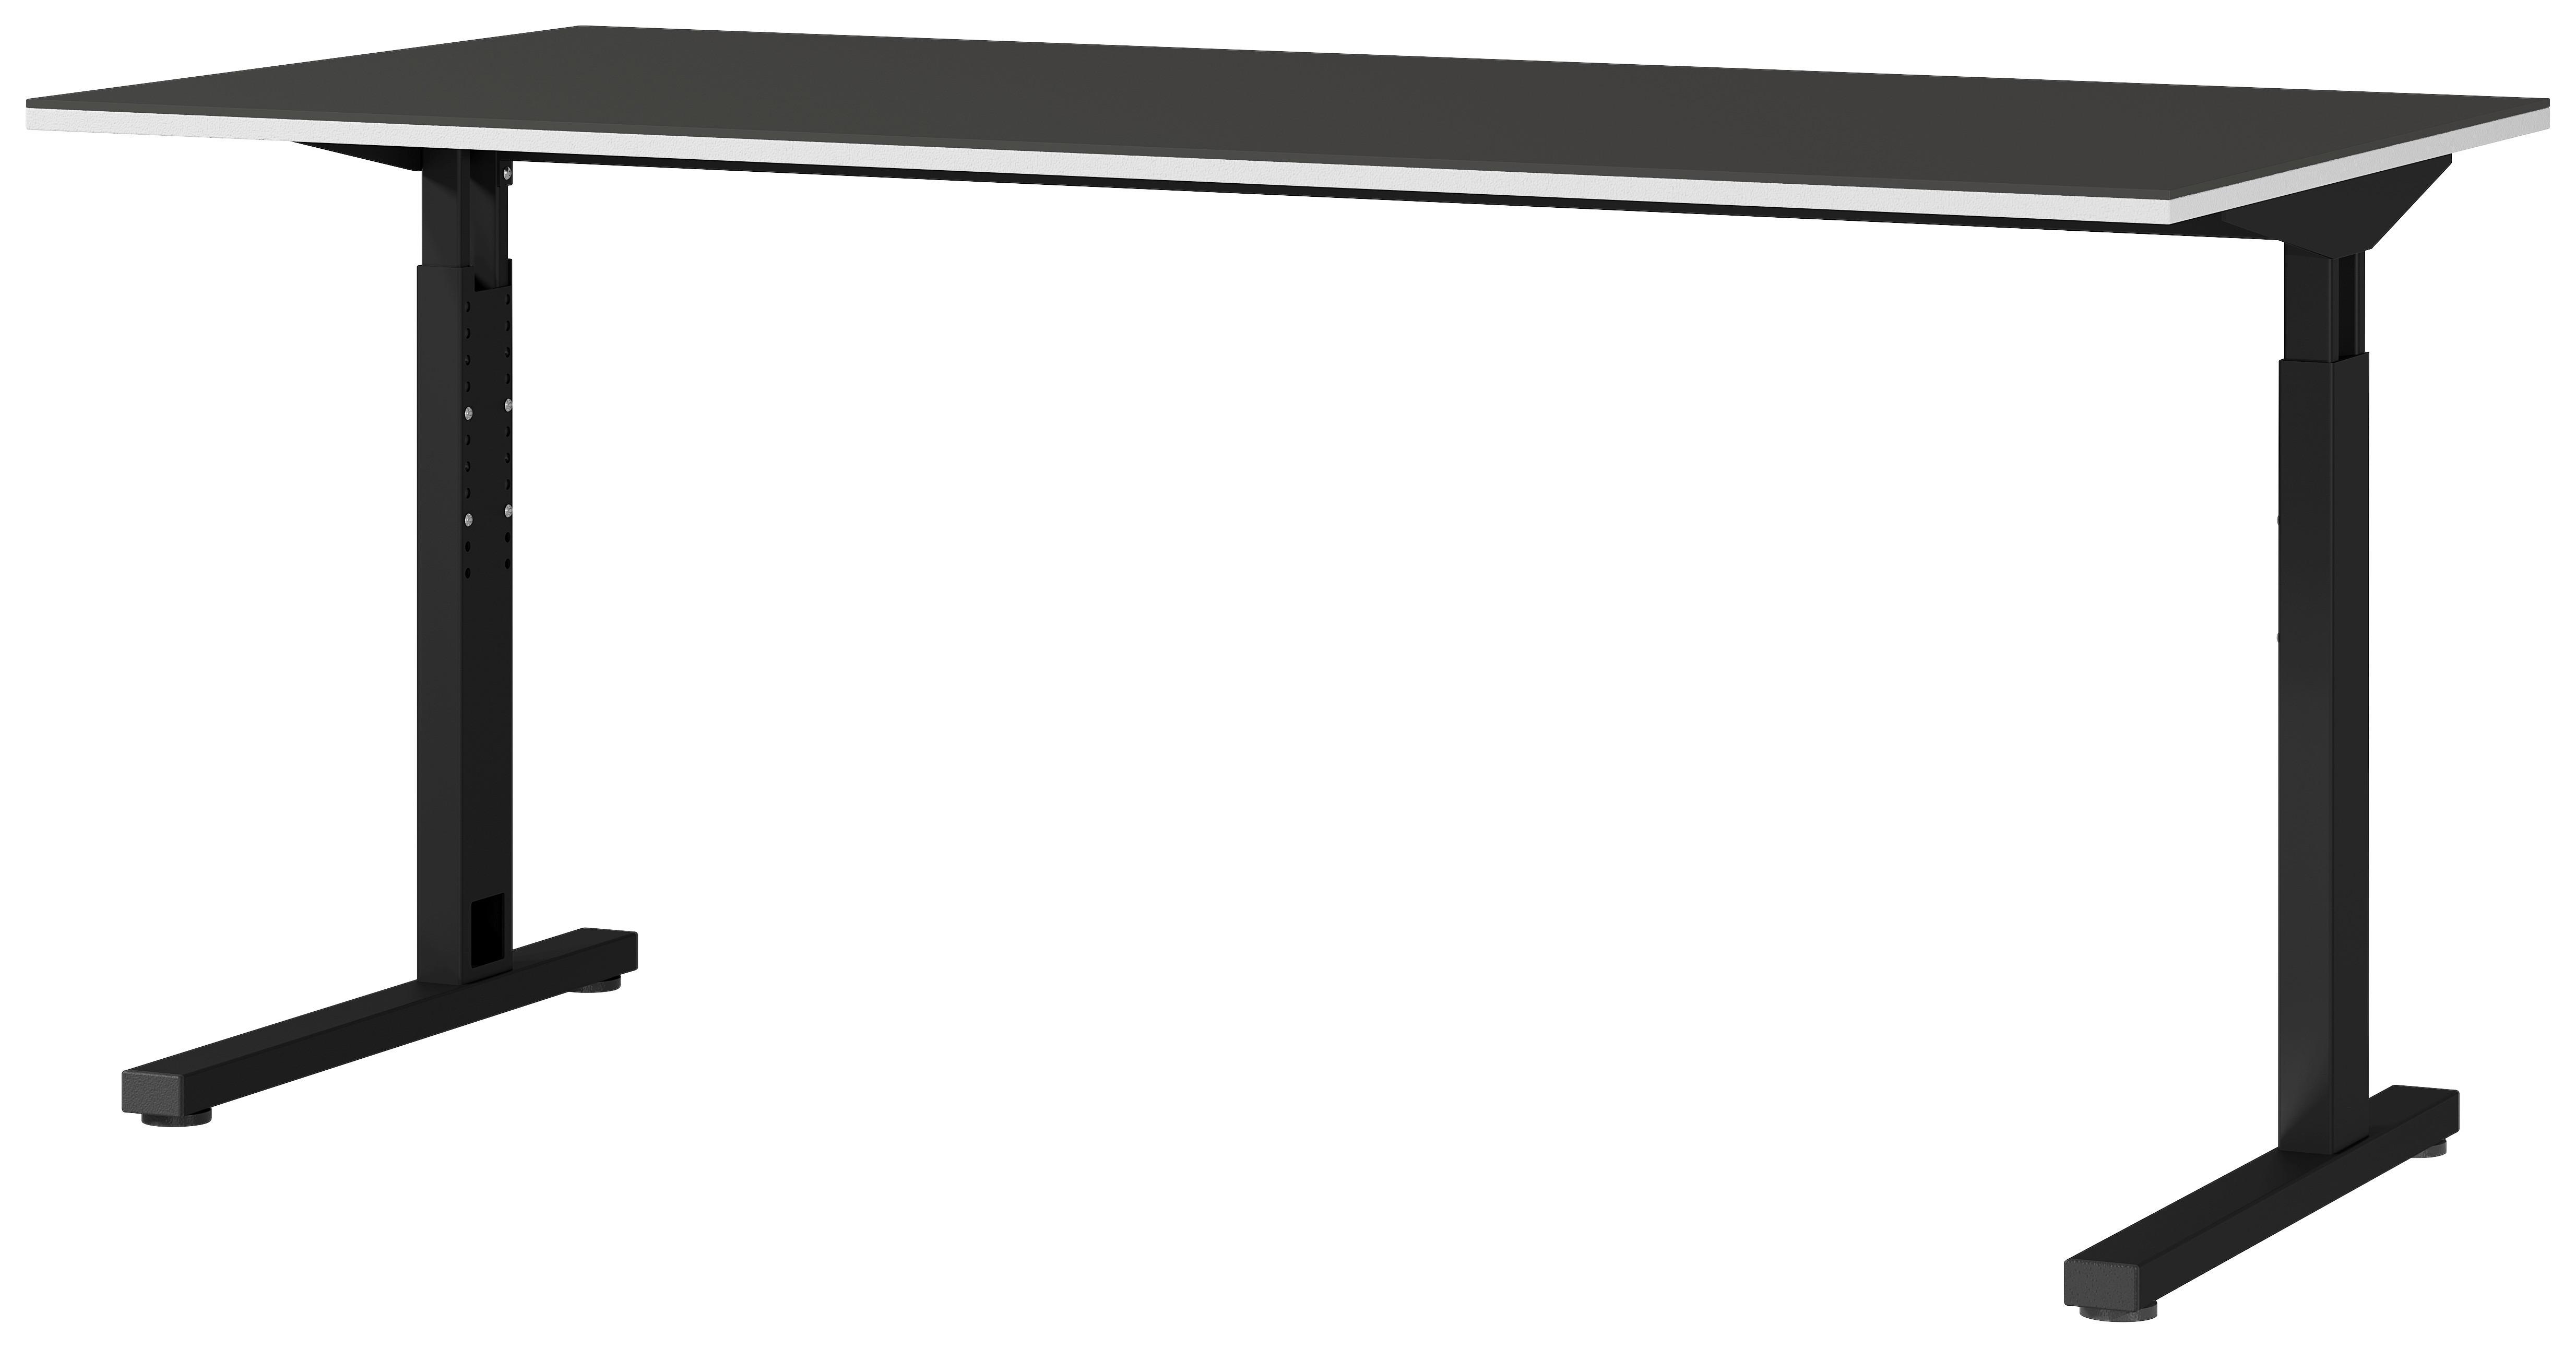 Schreibtisch höhenverstellbar B 160cm H 70cm Graphitschwarz - Schwarz/Graphitfarben, MODERN, Holzwerkstoff/Metall (160/70/80cm) - Germania